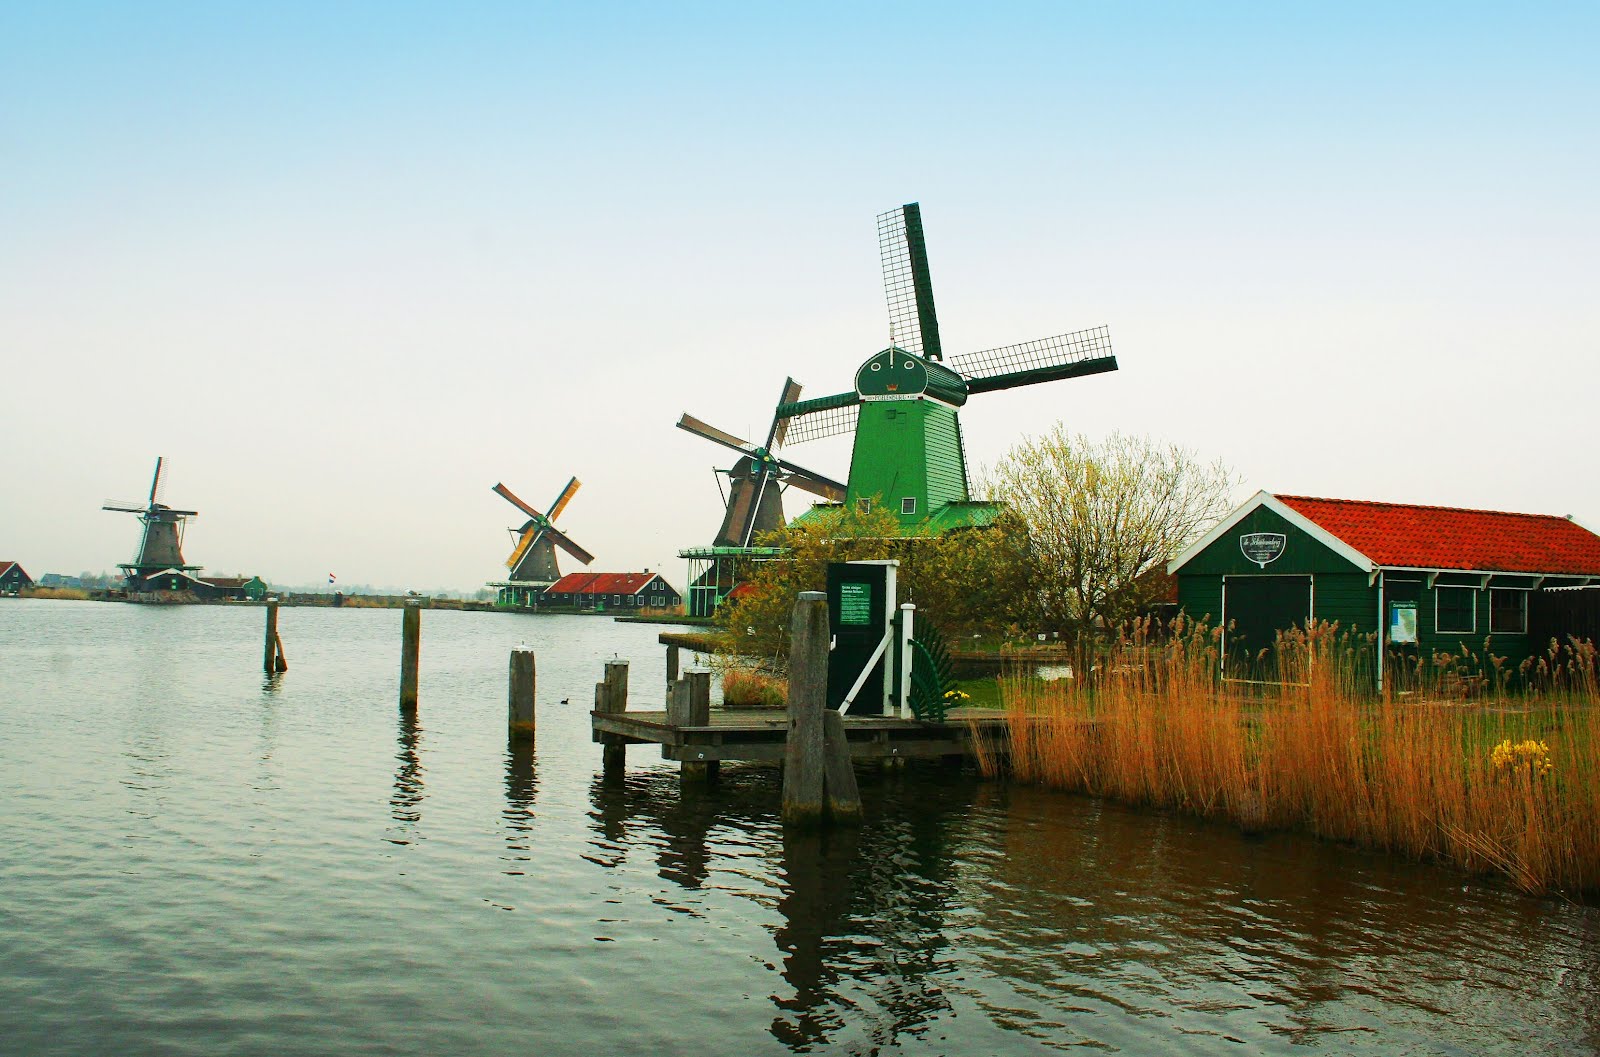 Molinos de viento en Holanda - Windmills in Holland | Molinos de viento